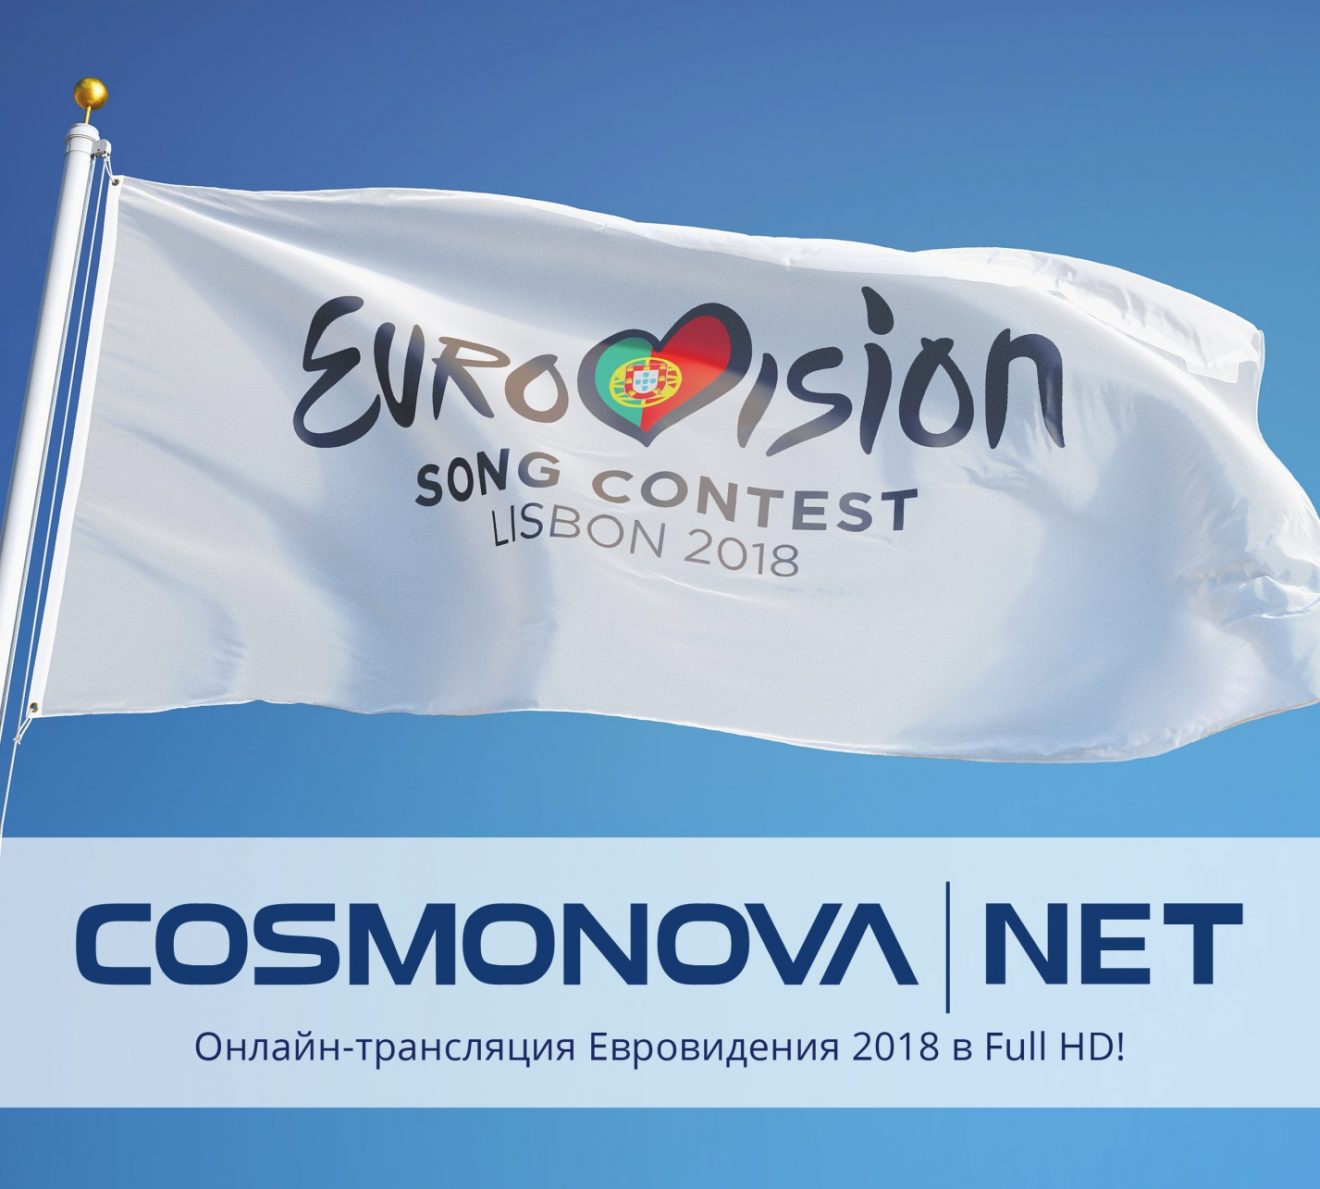 COSMONOVA NET live broadcast partner